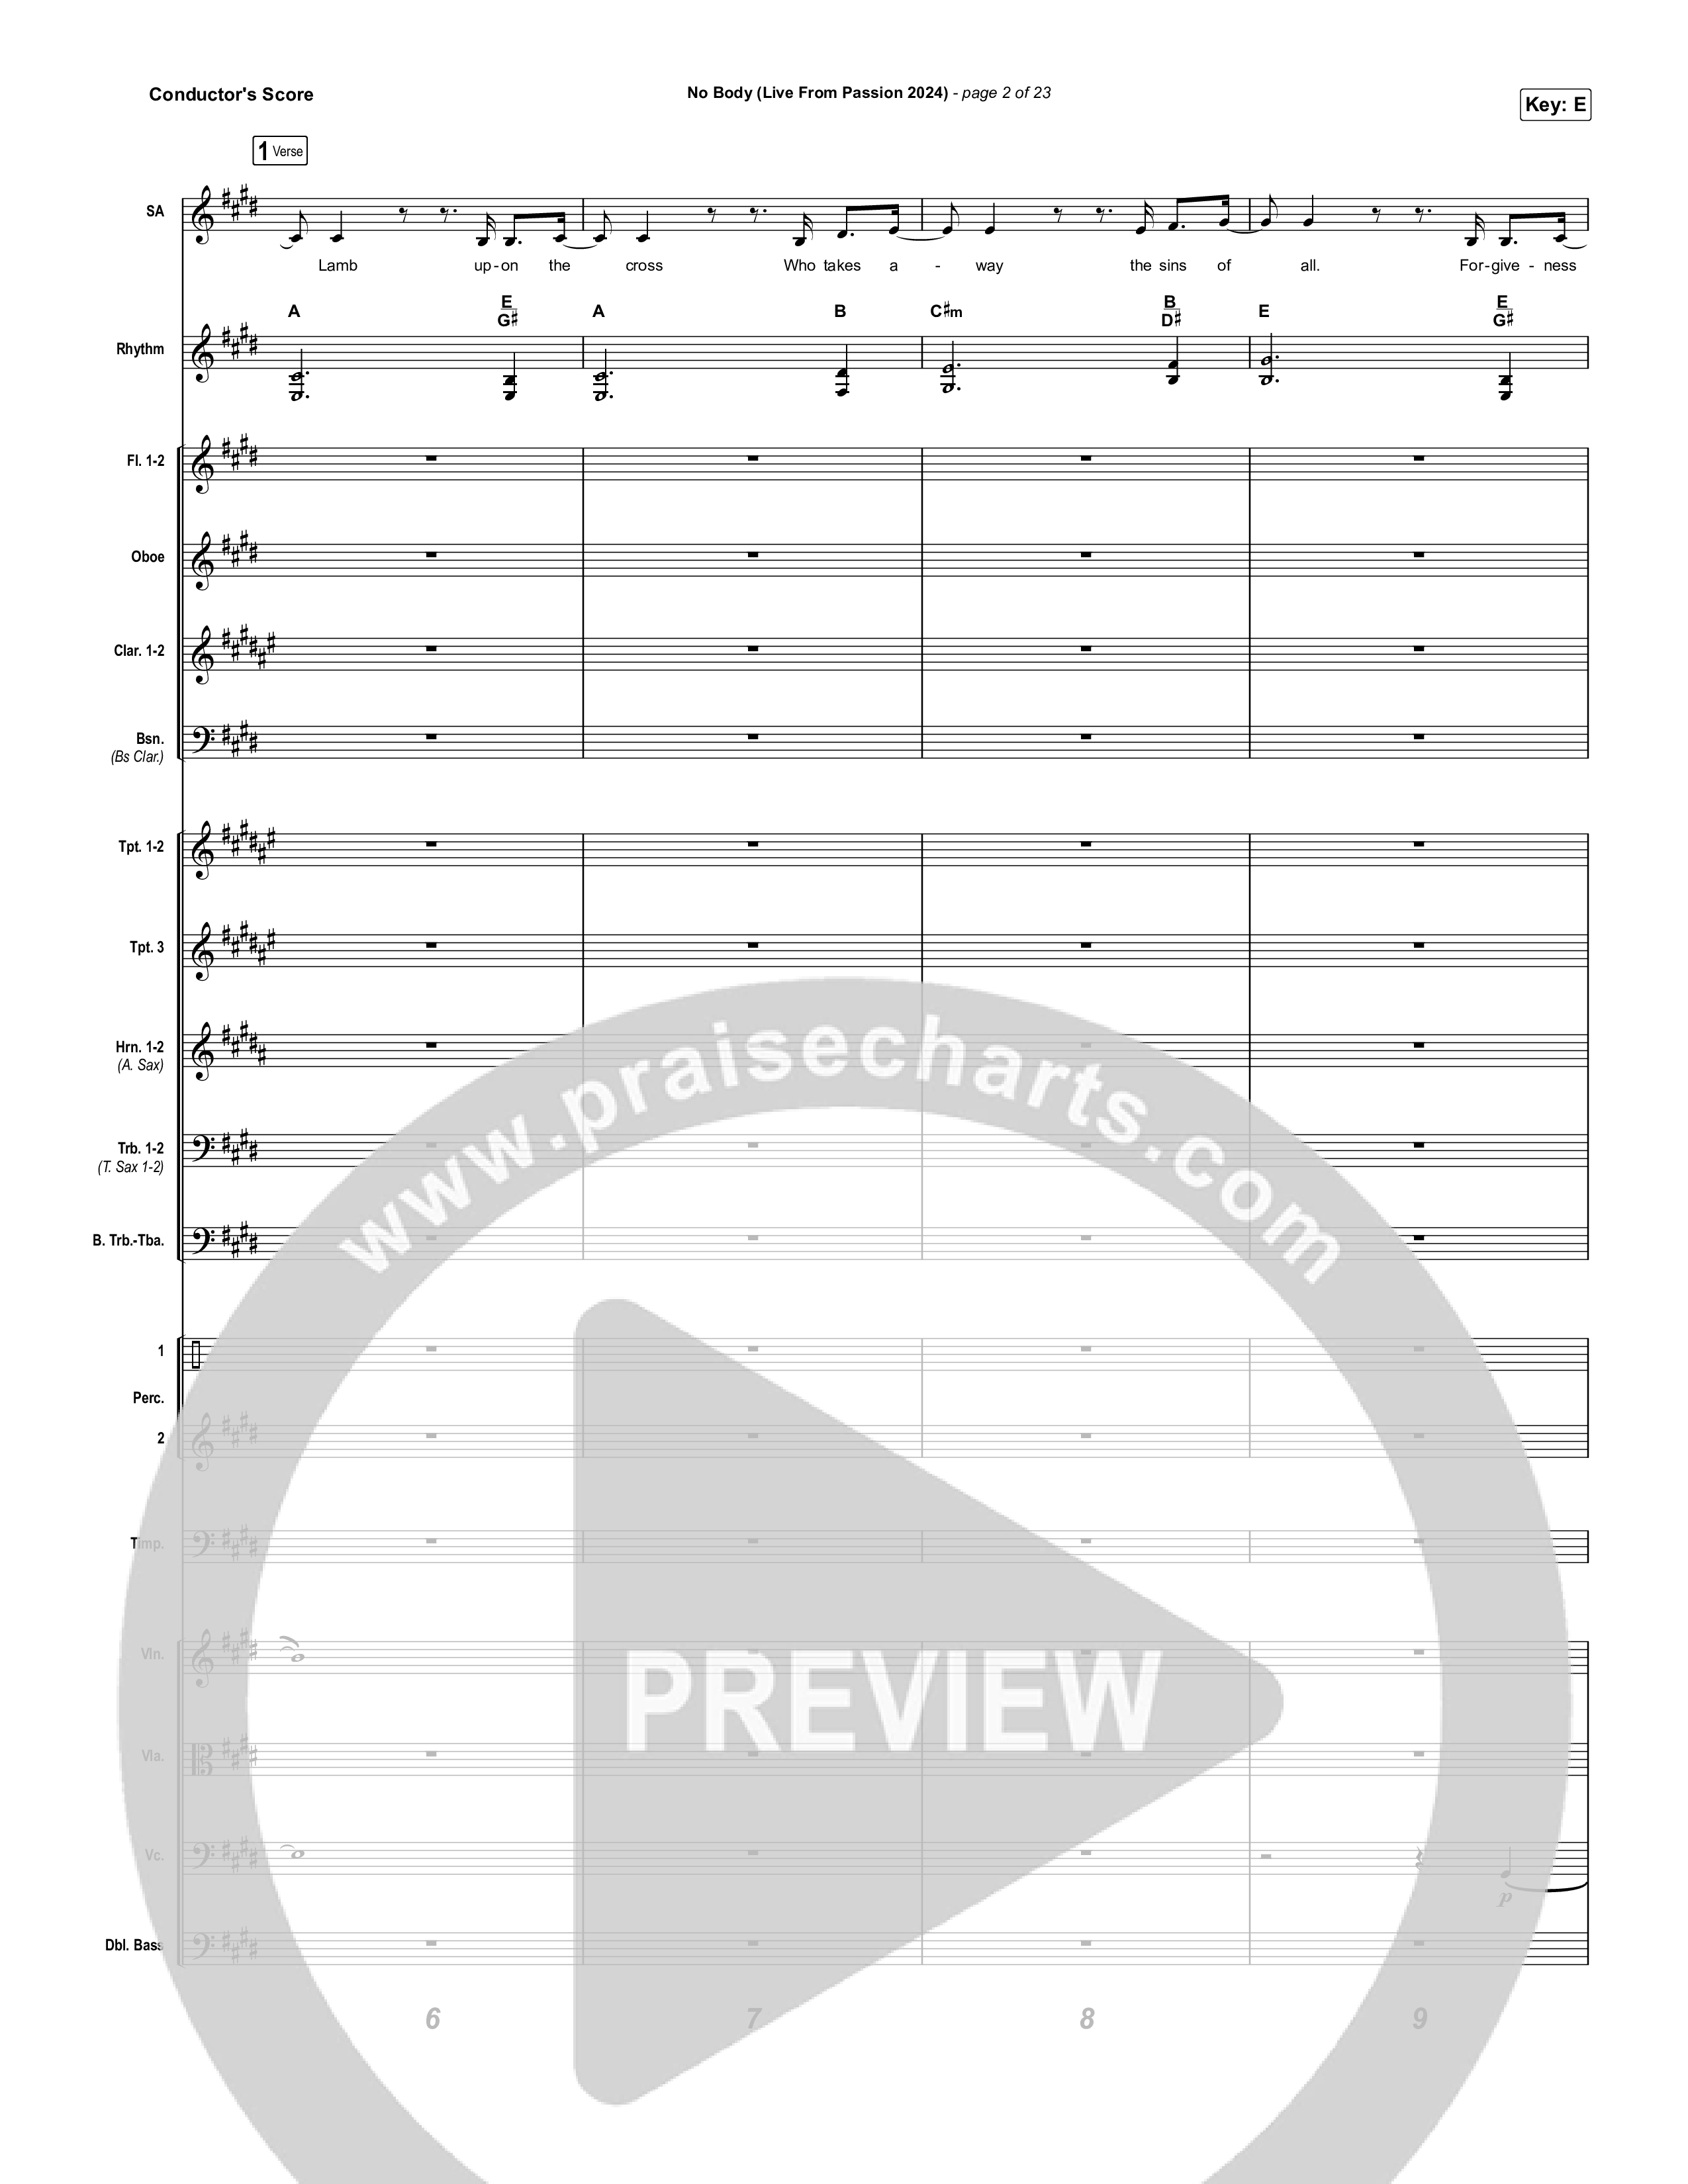 No Body (Live From Passion 2024) Conductor's Score (Passion / Chidima)